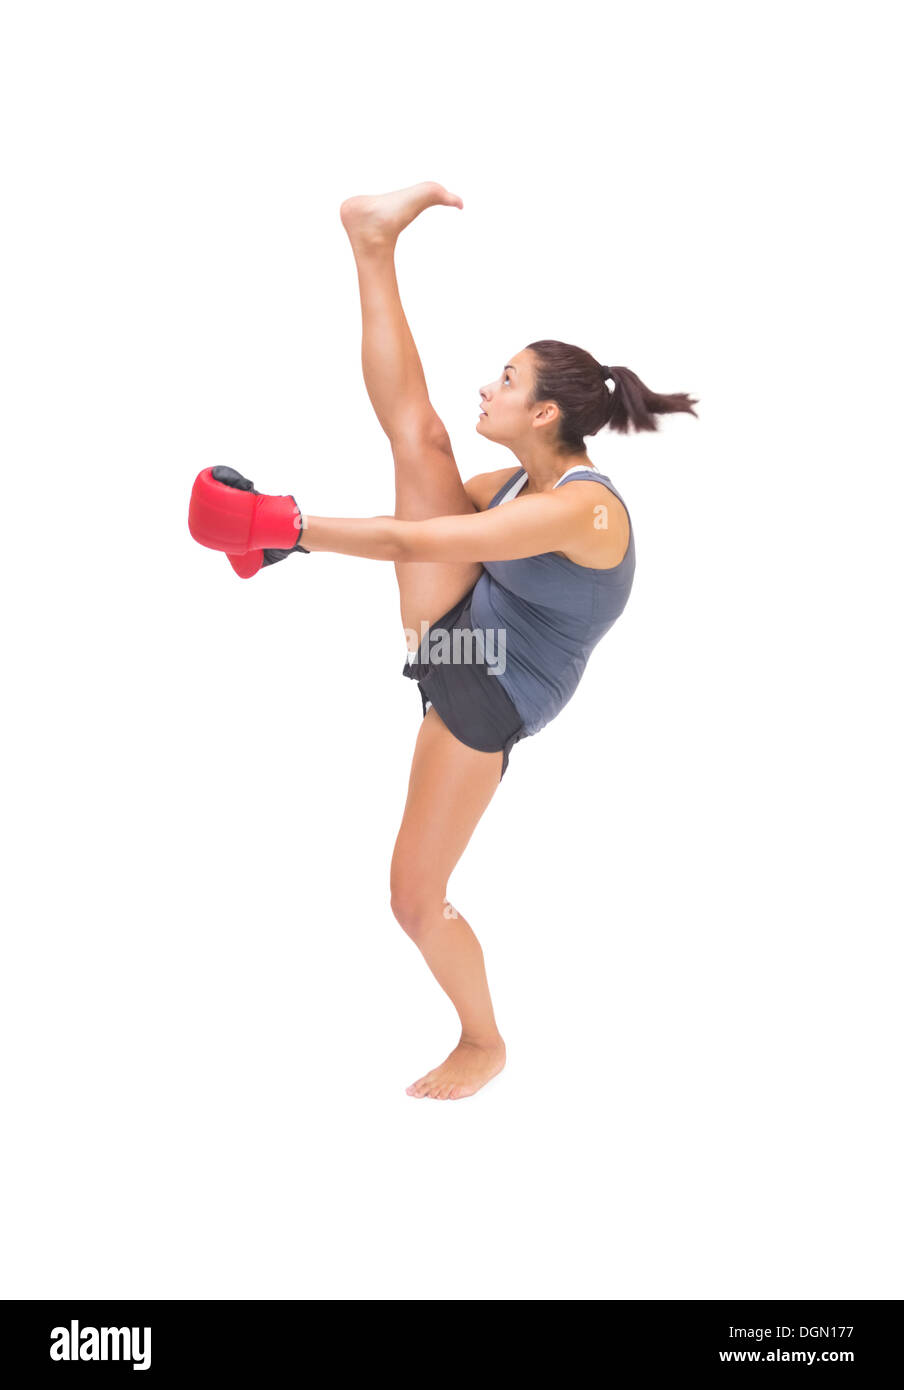 Jolie sporty brunette kick boxing Banque D'Images